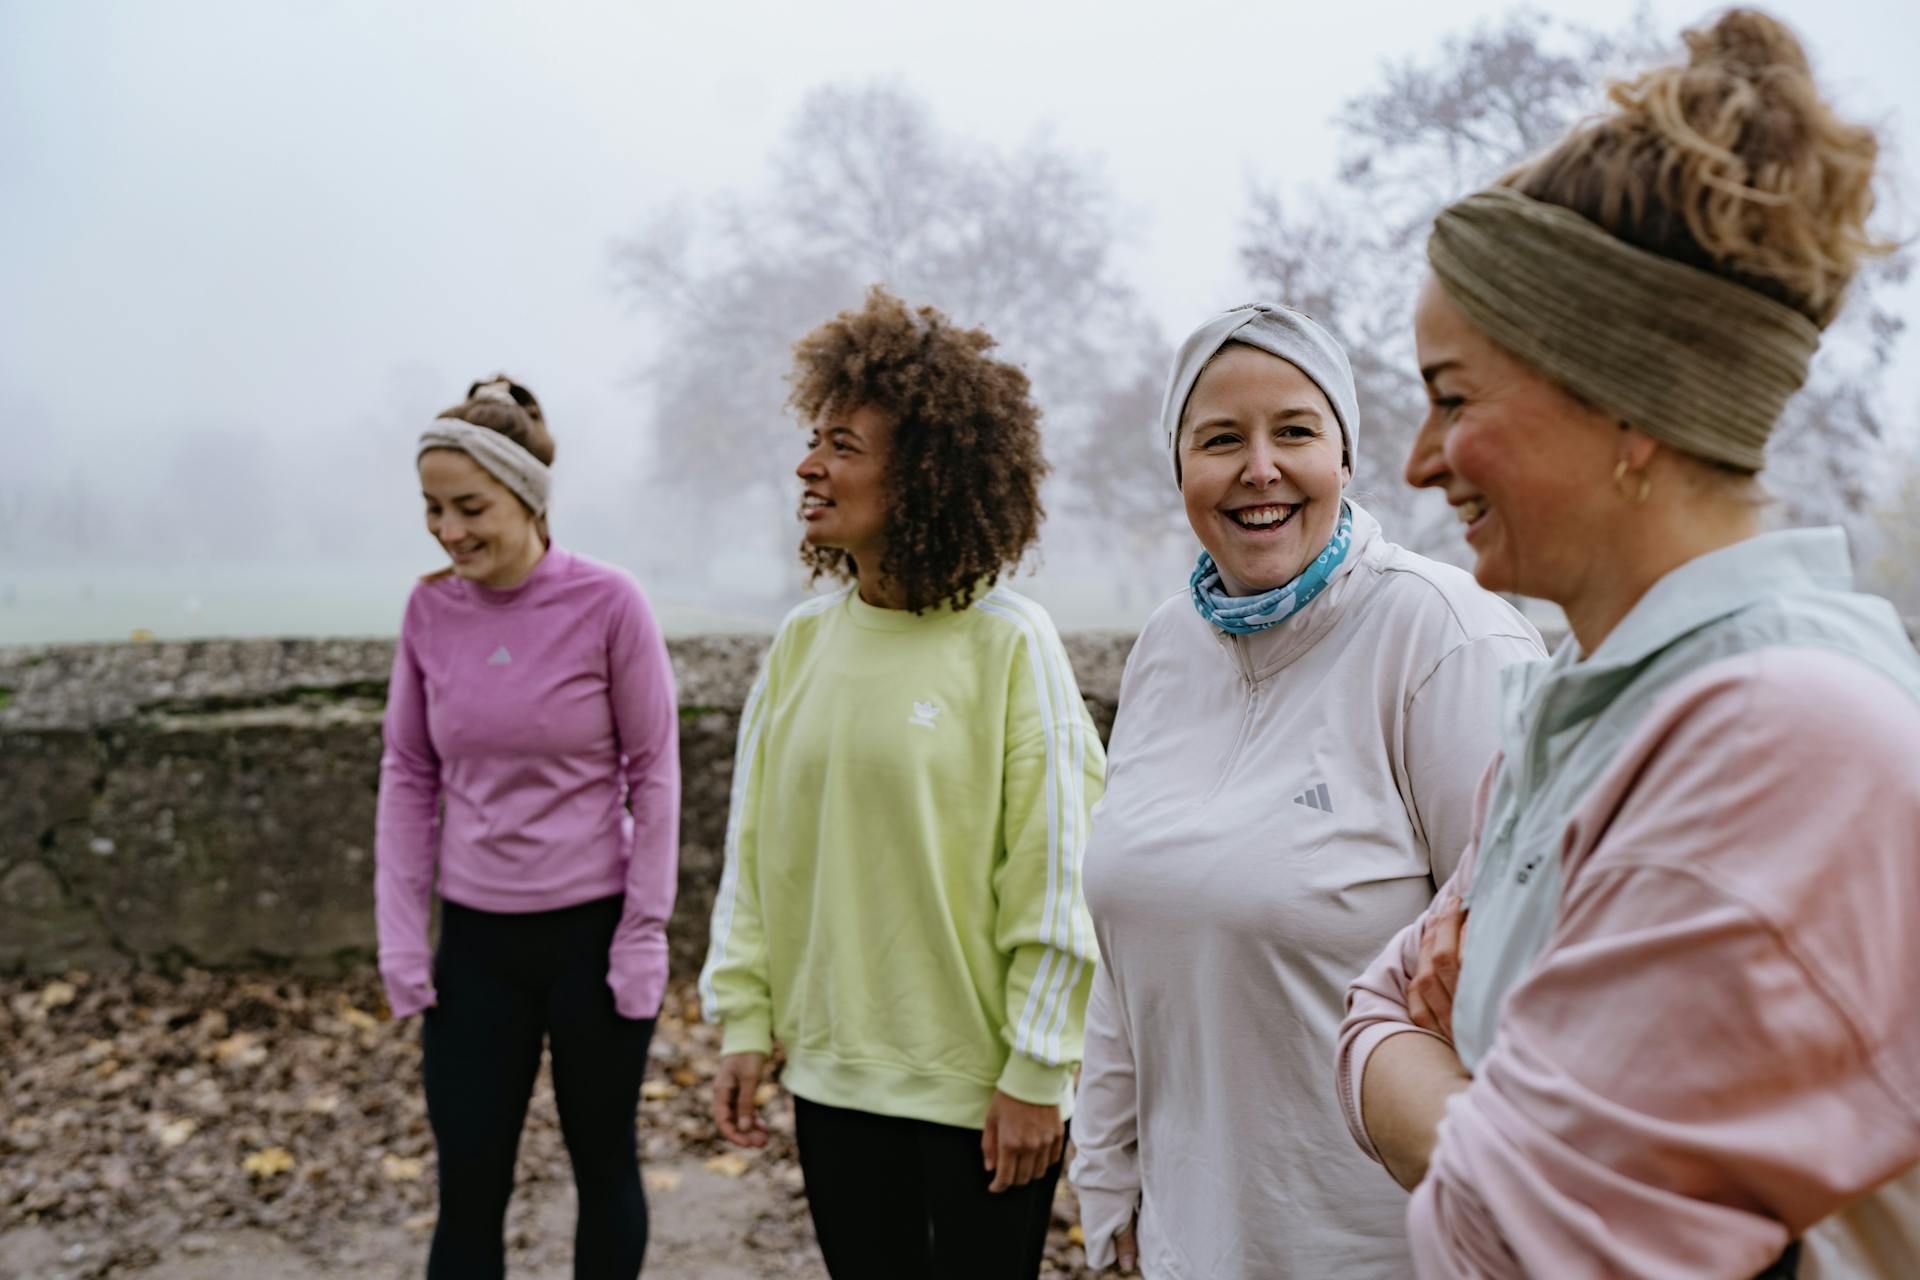 Vier Frauen im Outdoor Bootcamp in Winterkleidung